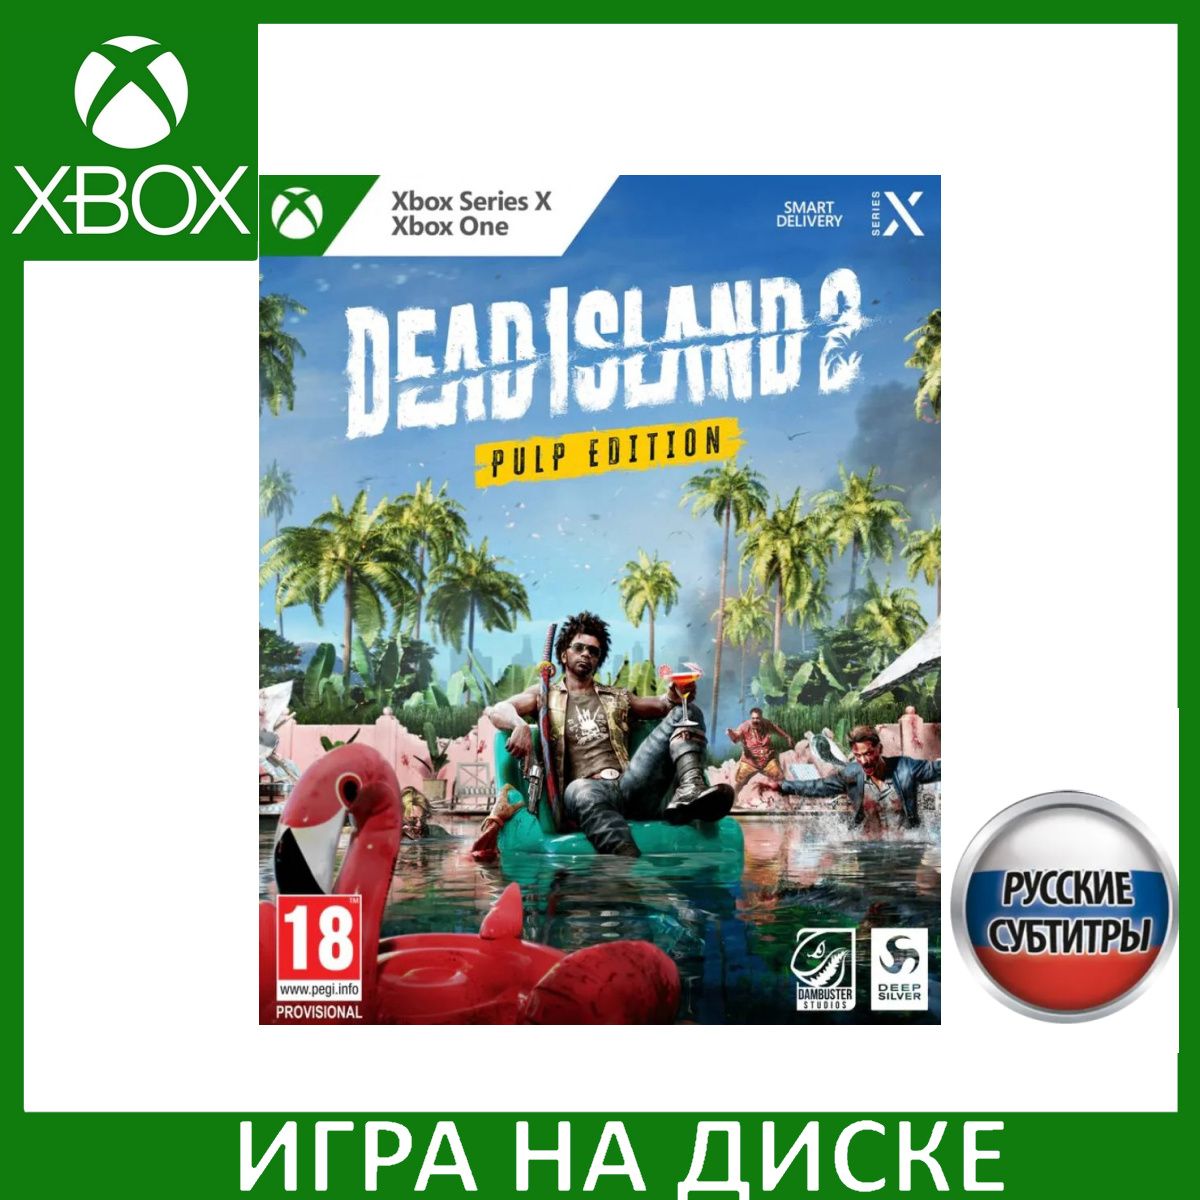 Русские Island 2 интернет-магазине (1331079050) купить Series, доставкой субтитры) Edition (Xbox низкой Xbox по OZON Pulp Dead в с One, цене Игра